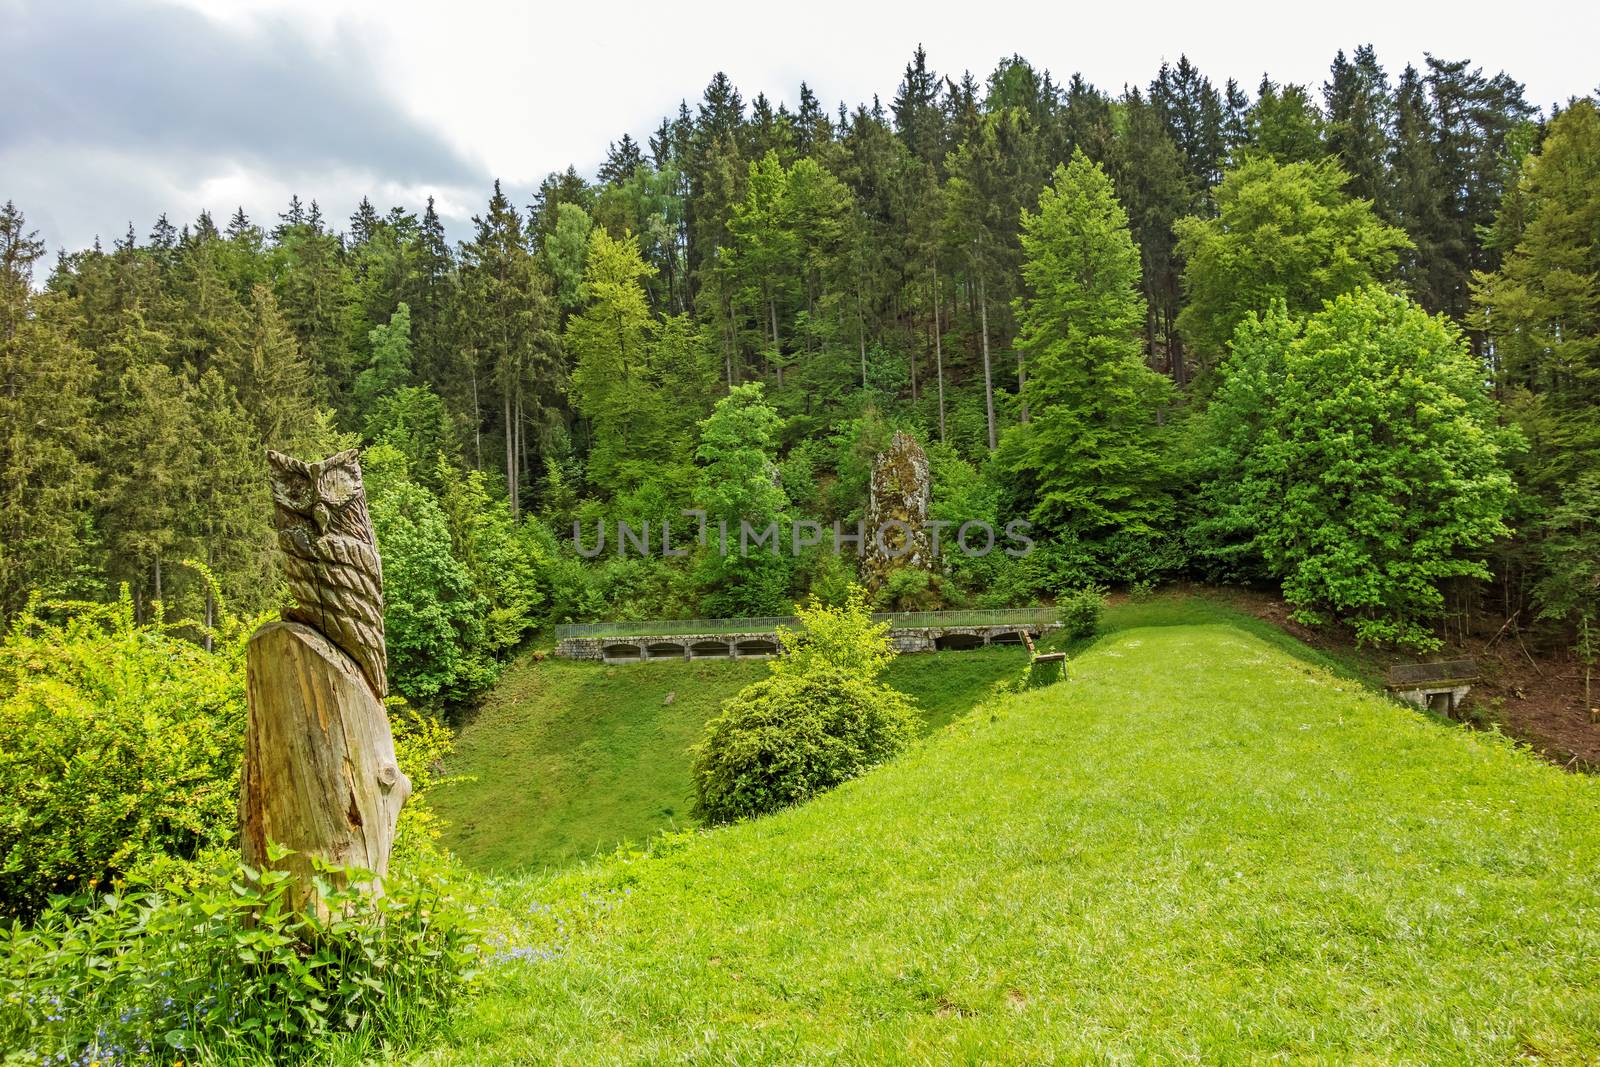 Wental valley reservoir dam - forest / trees in background, carved owl in foreground - Swabian Alps (Schwaebische Alb)